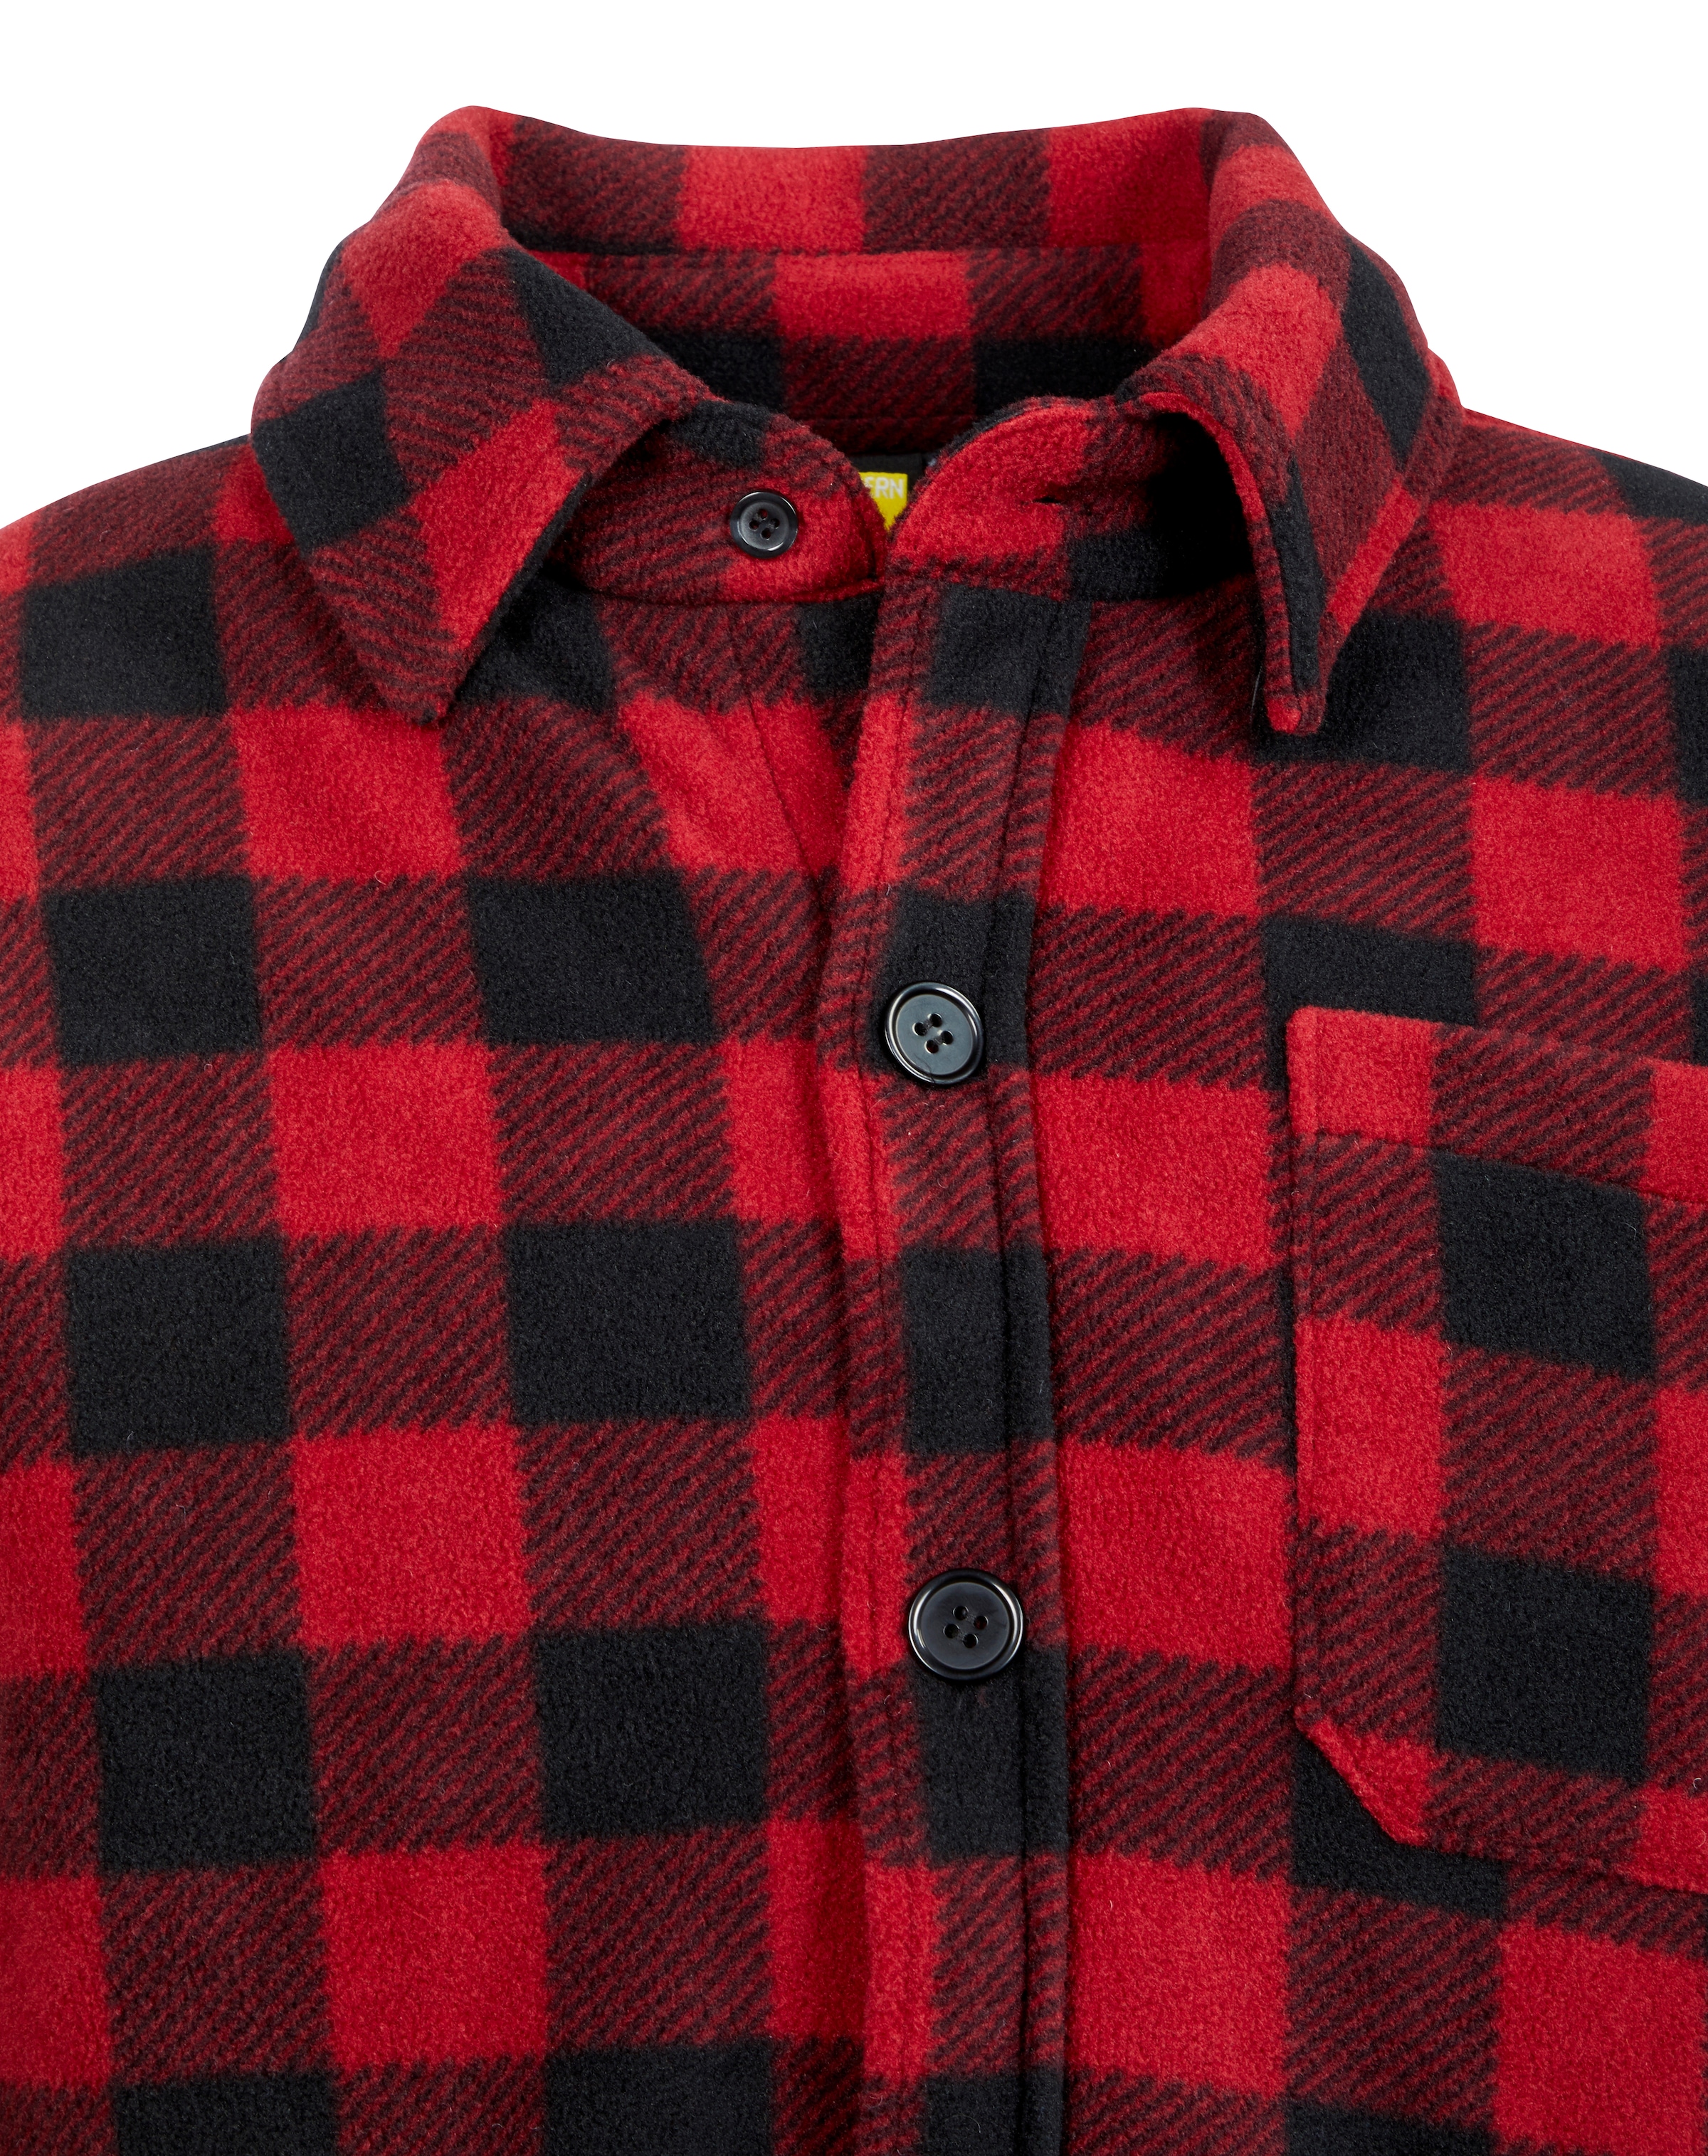 Northern Country Flanellhemd, (als gefüttert, tragen), ♕ verlängertem zu warm Hemd mit 5 zugeknöpft Taschen, Rücken, offen mit Jacke oder Flanellstoff bei